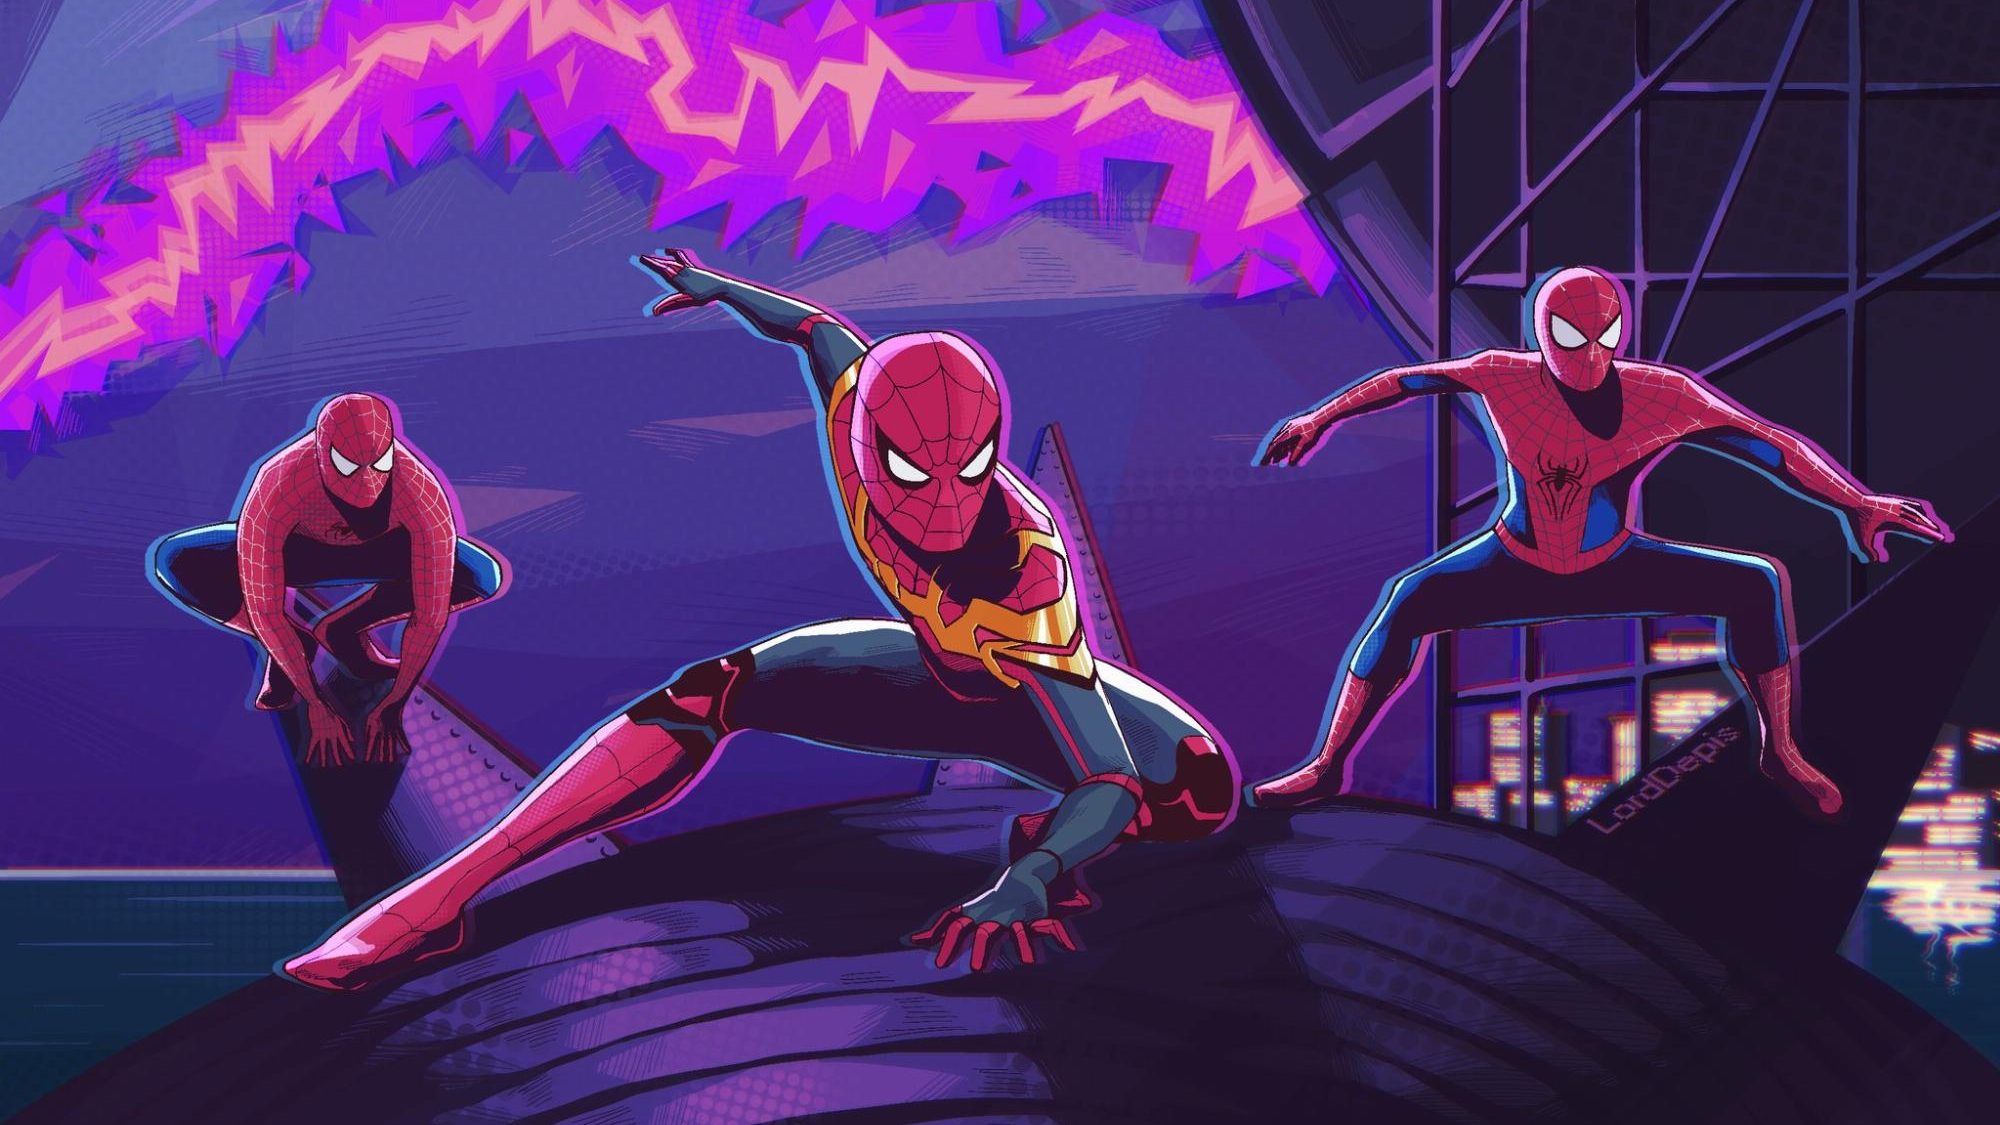 Vẽ Spider Man chibi: Với những hình ảnh vẽ Spider Man chibi đáng yêu, bạn sẽ không khỏi cười nhảy khi nhìn thấy nhân vật người nhện vui nhộn này. Hãy cùng khám phá thế giới của người nhện với các hình ảnh vẽ chibi này và thưởng thức khoảnh khắc đáng nhớ.